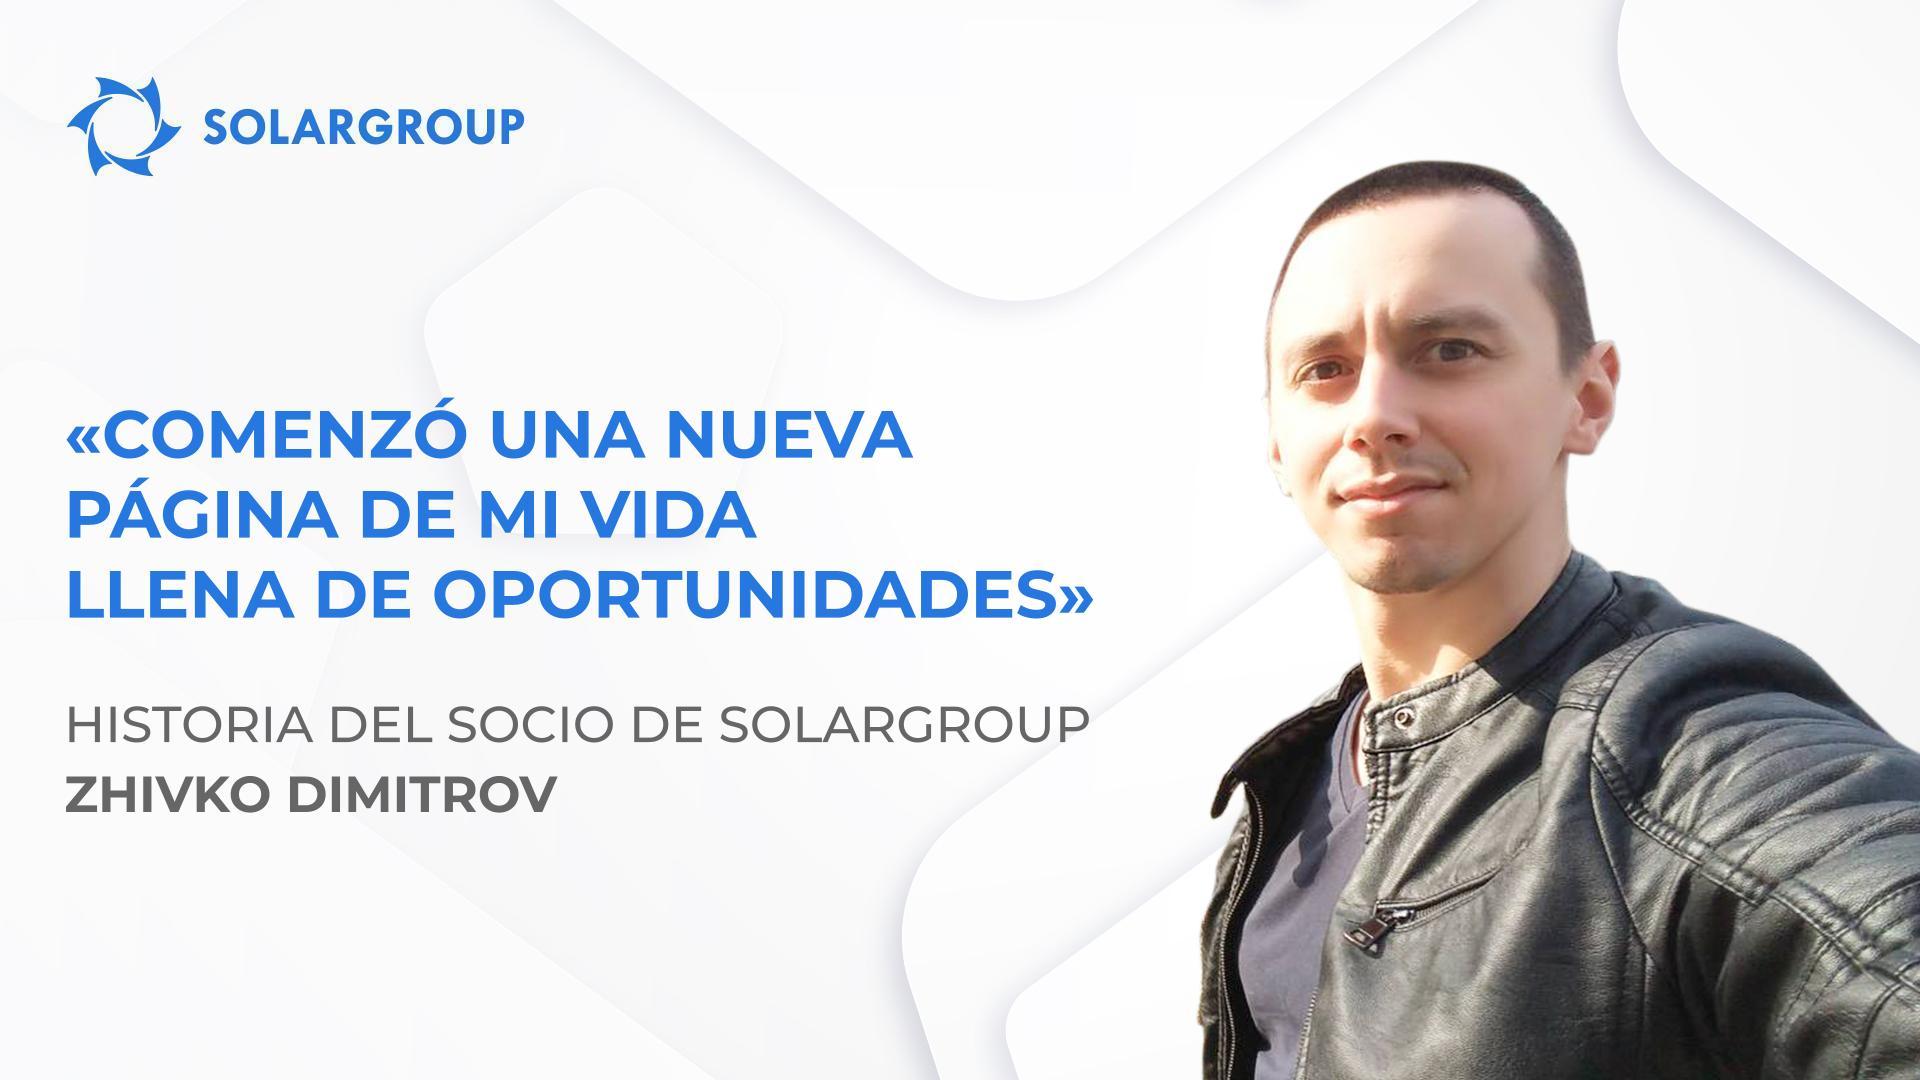 SOLARGROUP cambió mi visión del mundo y mi estilo de vida | Historia del socio Zhivko Dimitrov